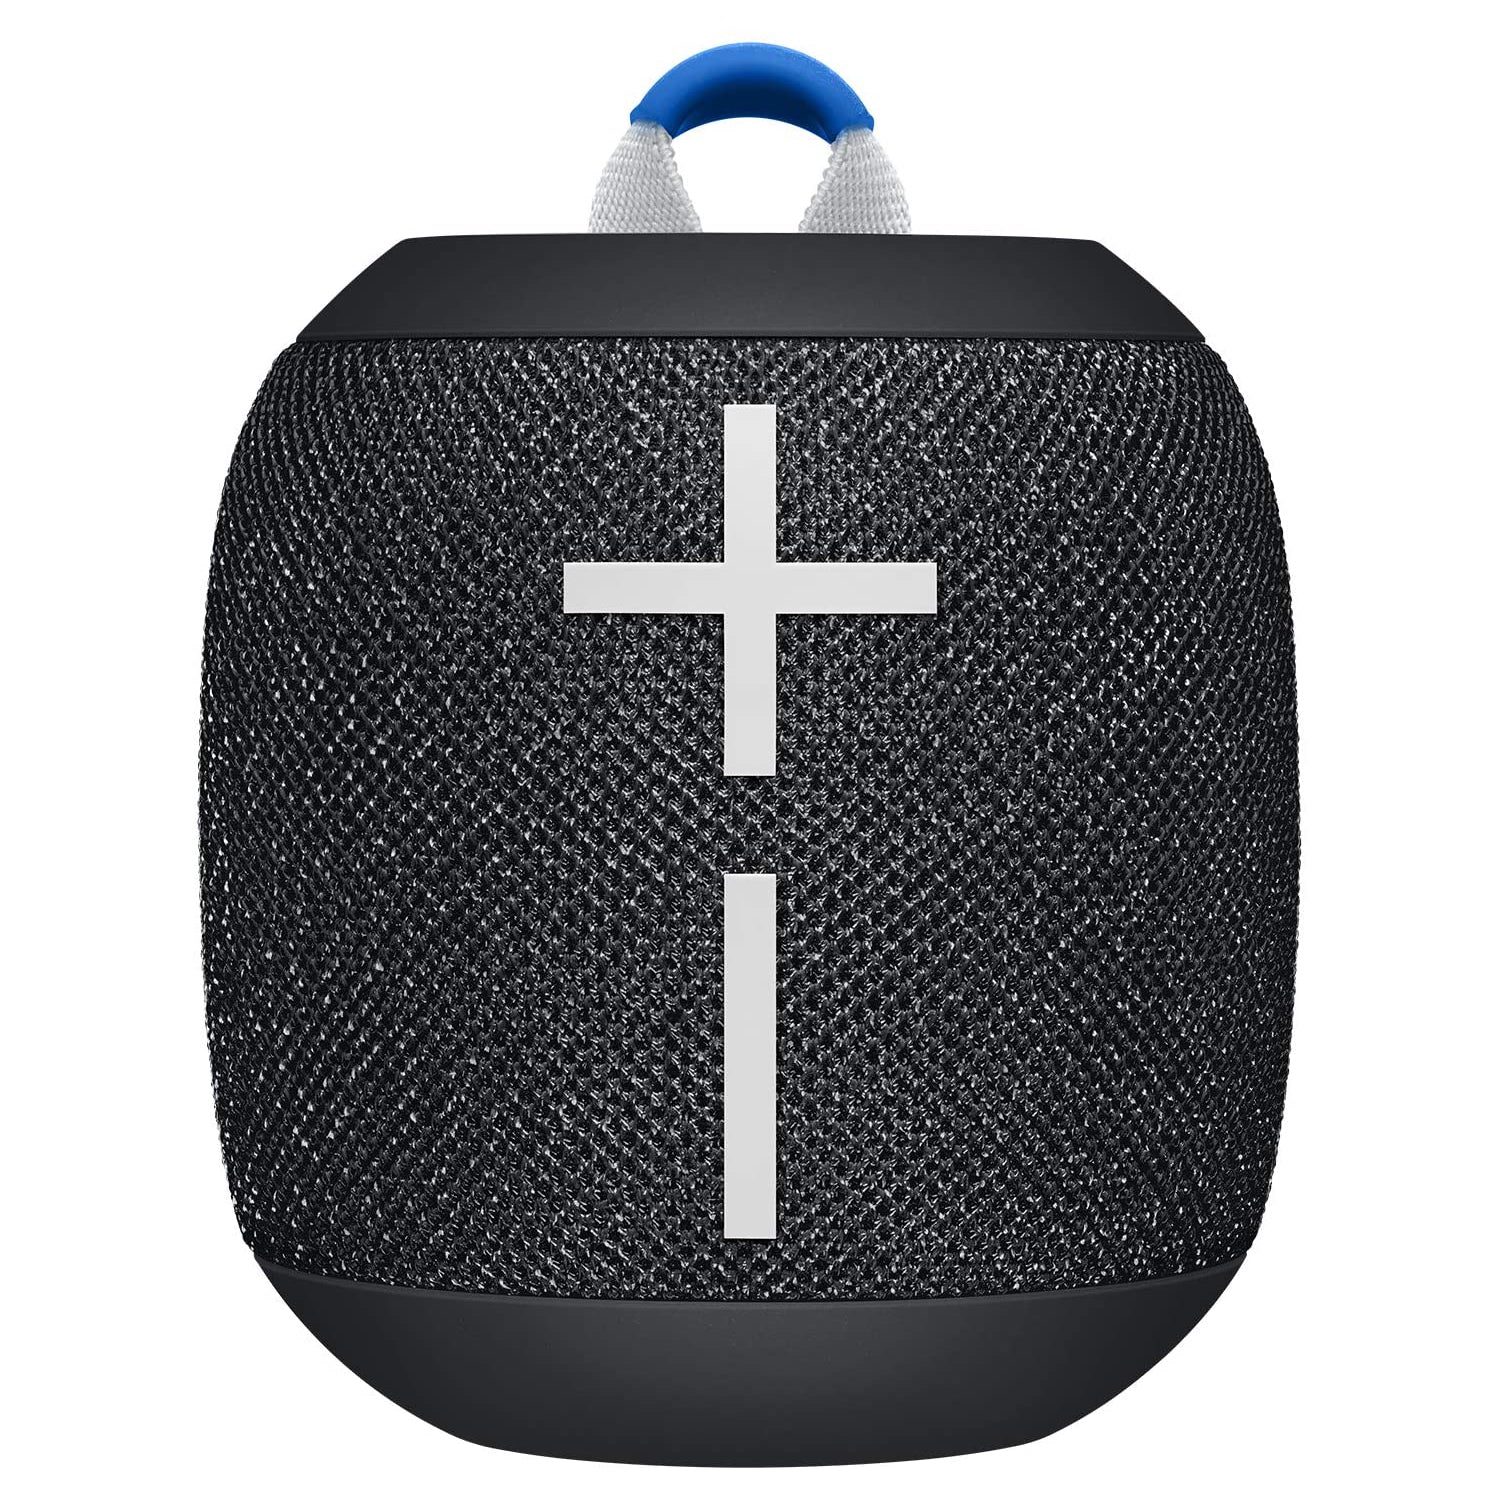 Ultimate Ears WONDERBOOM 2 Portable Bluetooth Speaker - Deep Space Black (Refurbished)